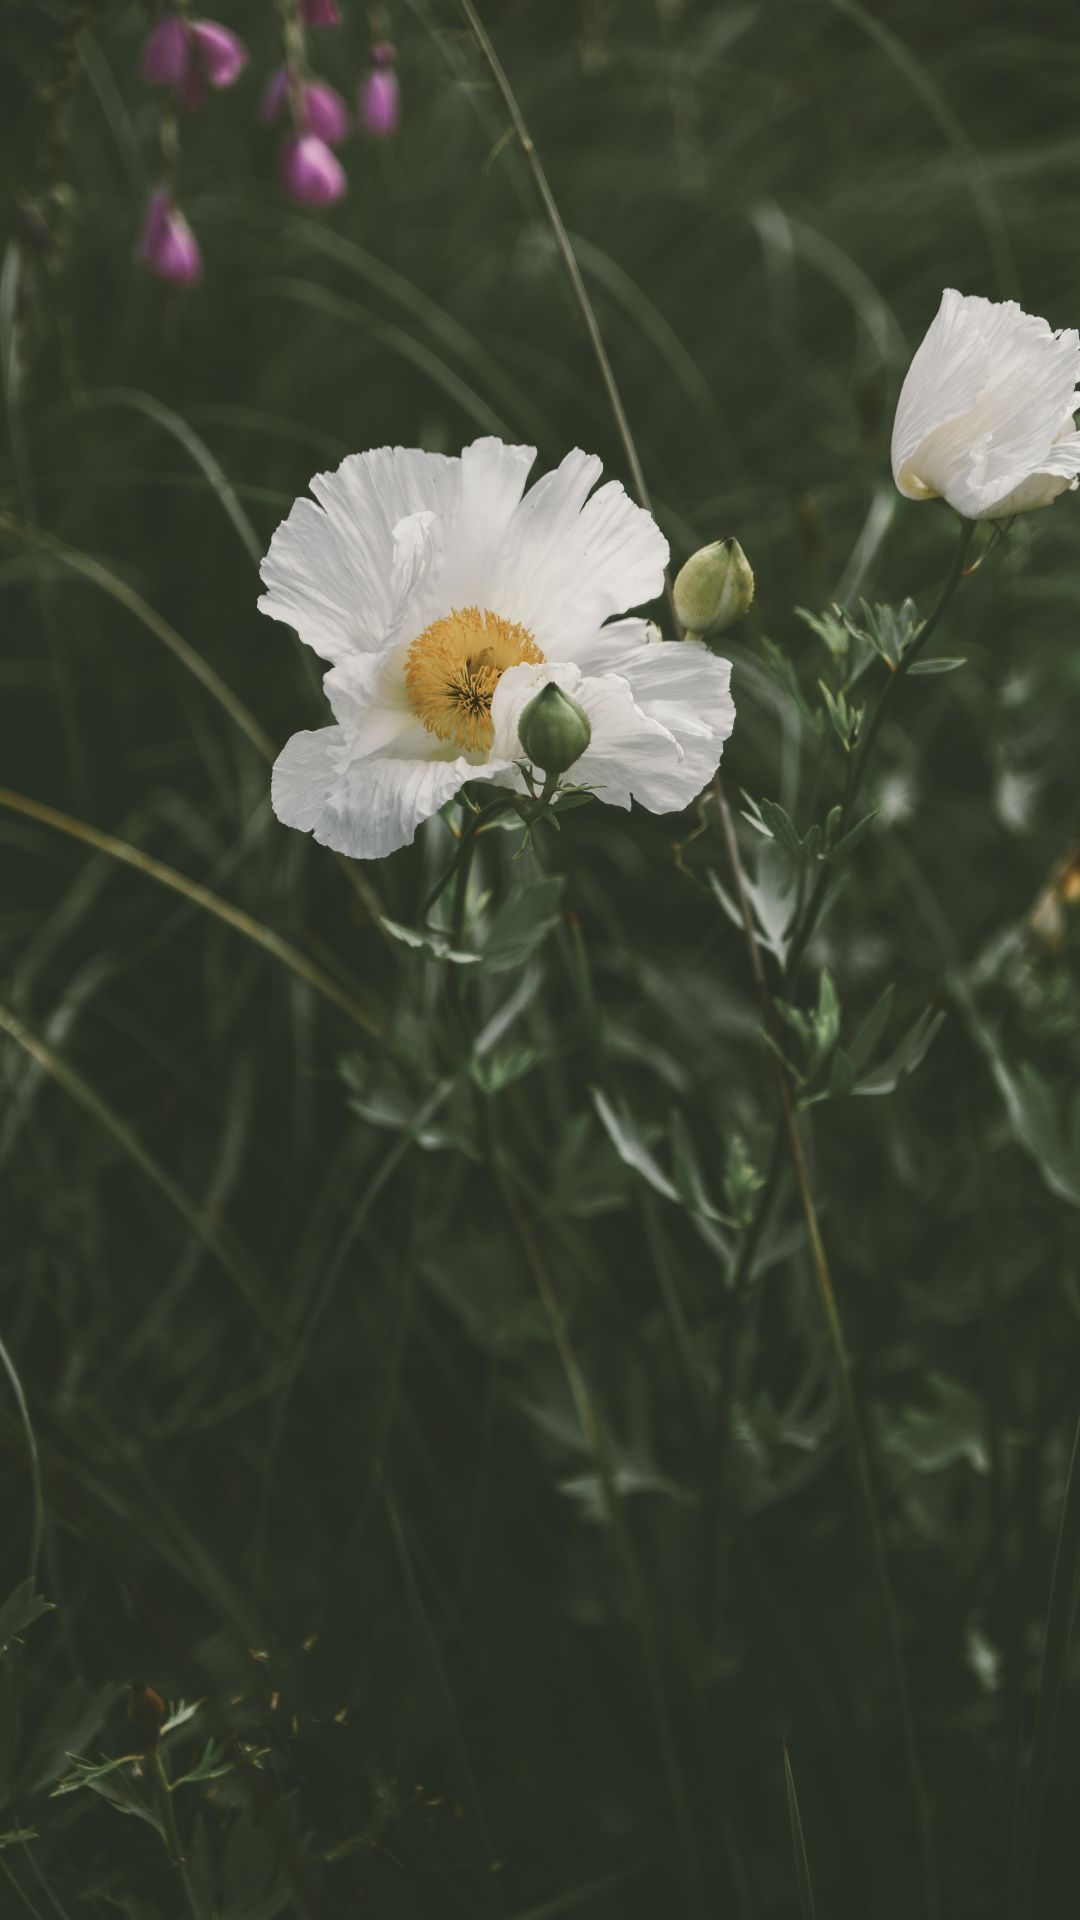 White Poppy, Beautiful flower, Nature's beauty, Retina HD, 1080x1920 Full HD Phone